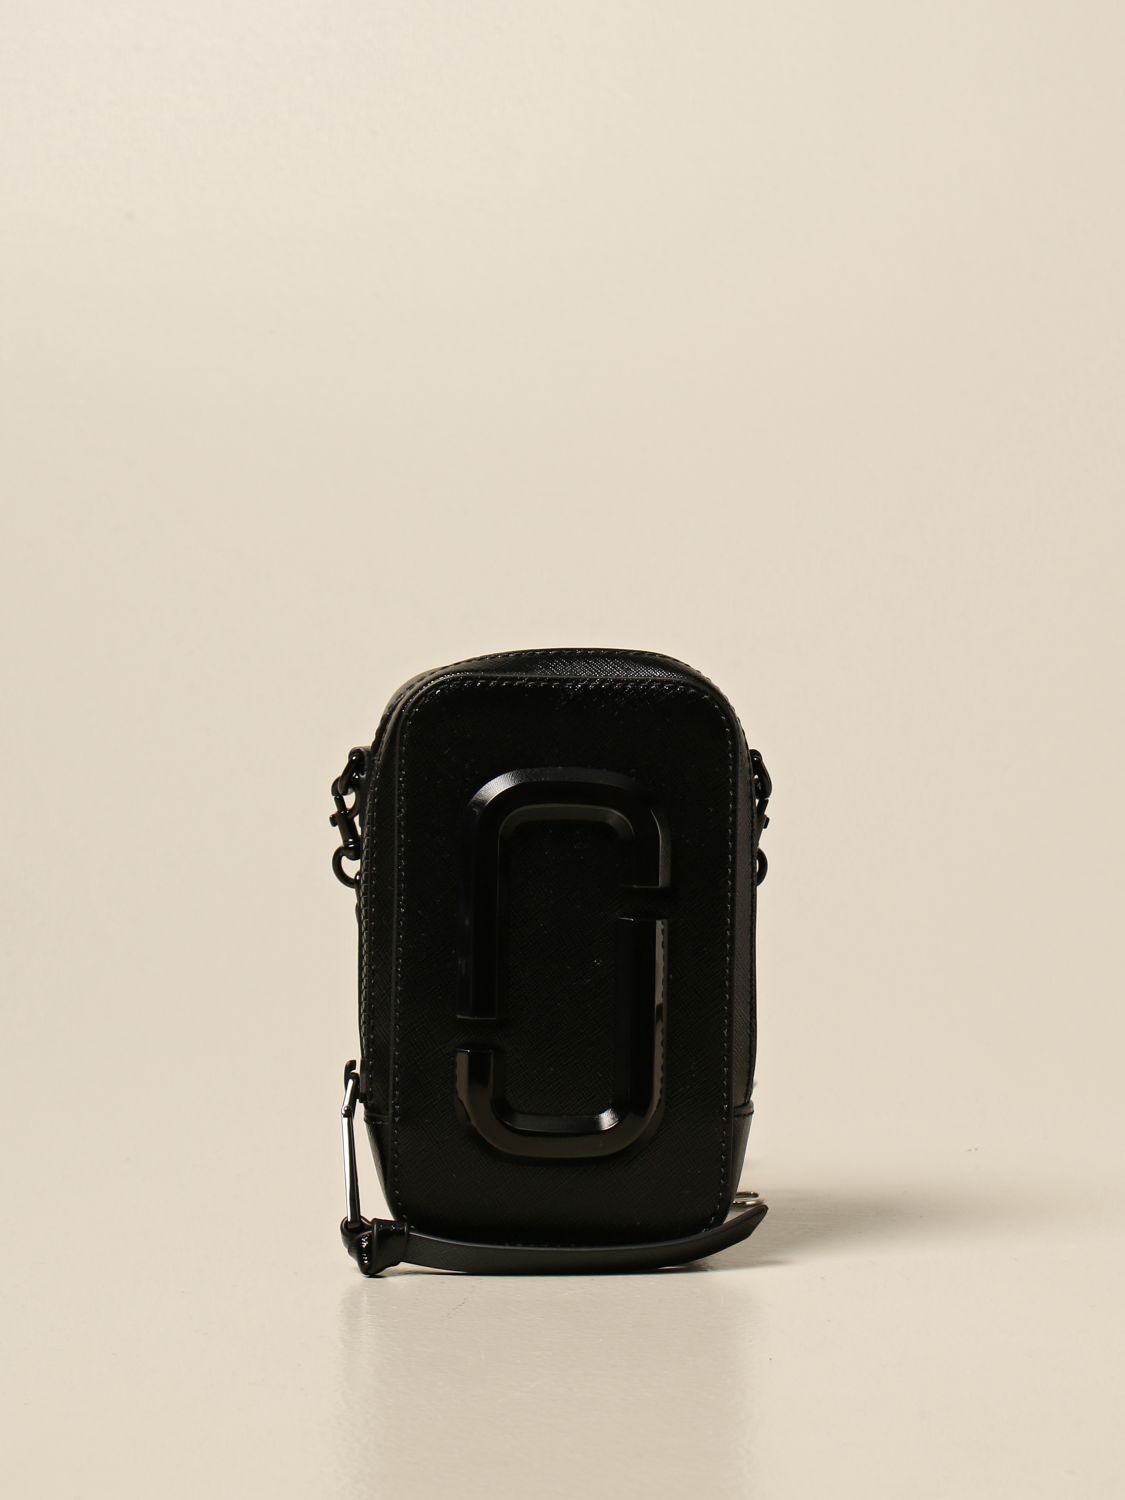 Marc Jacobs The Shot Dtm Bag in Black